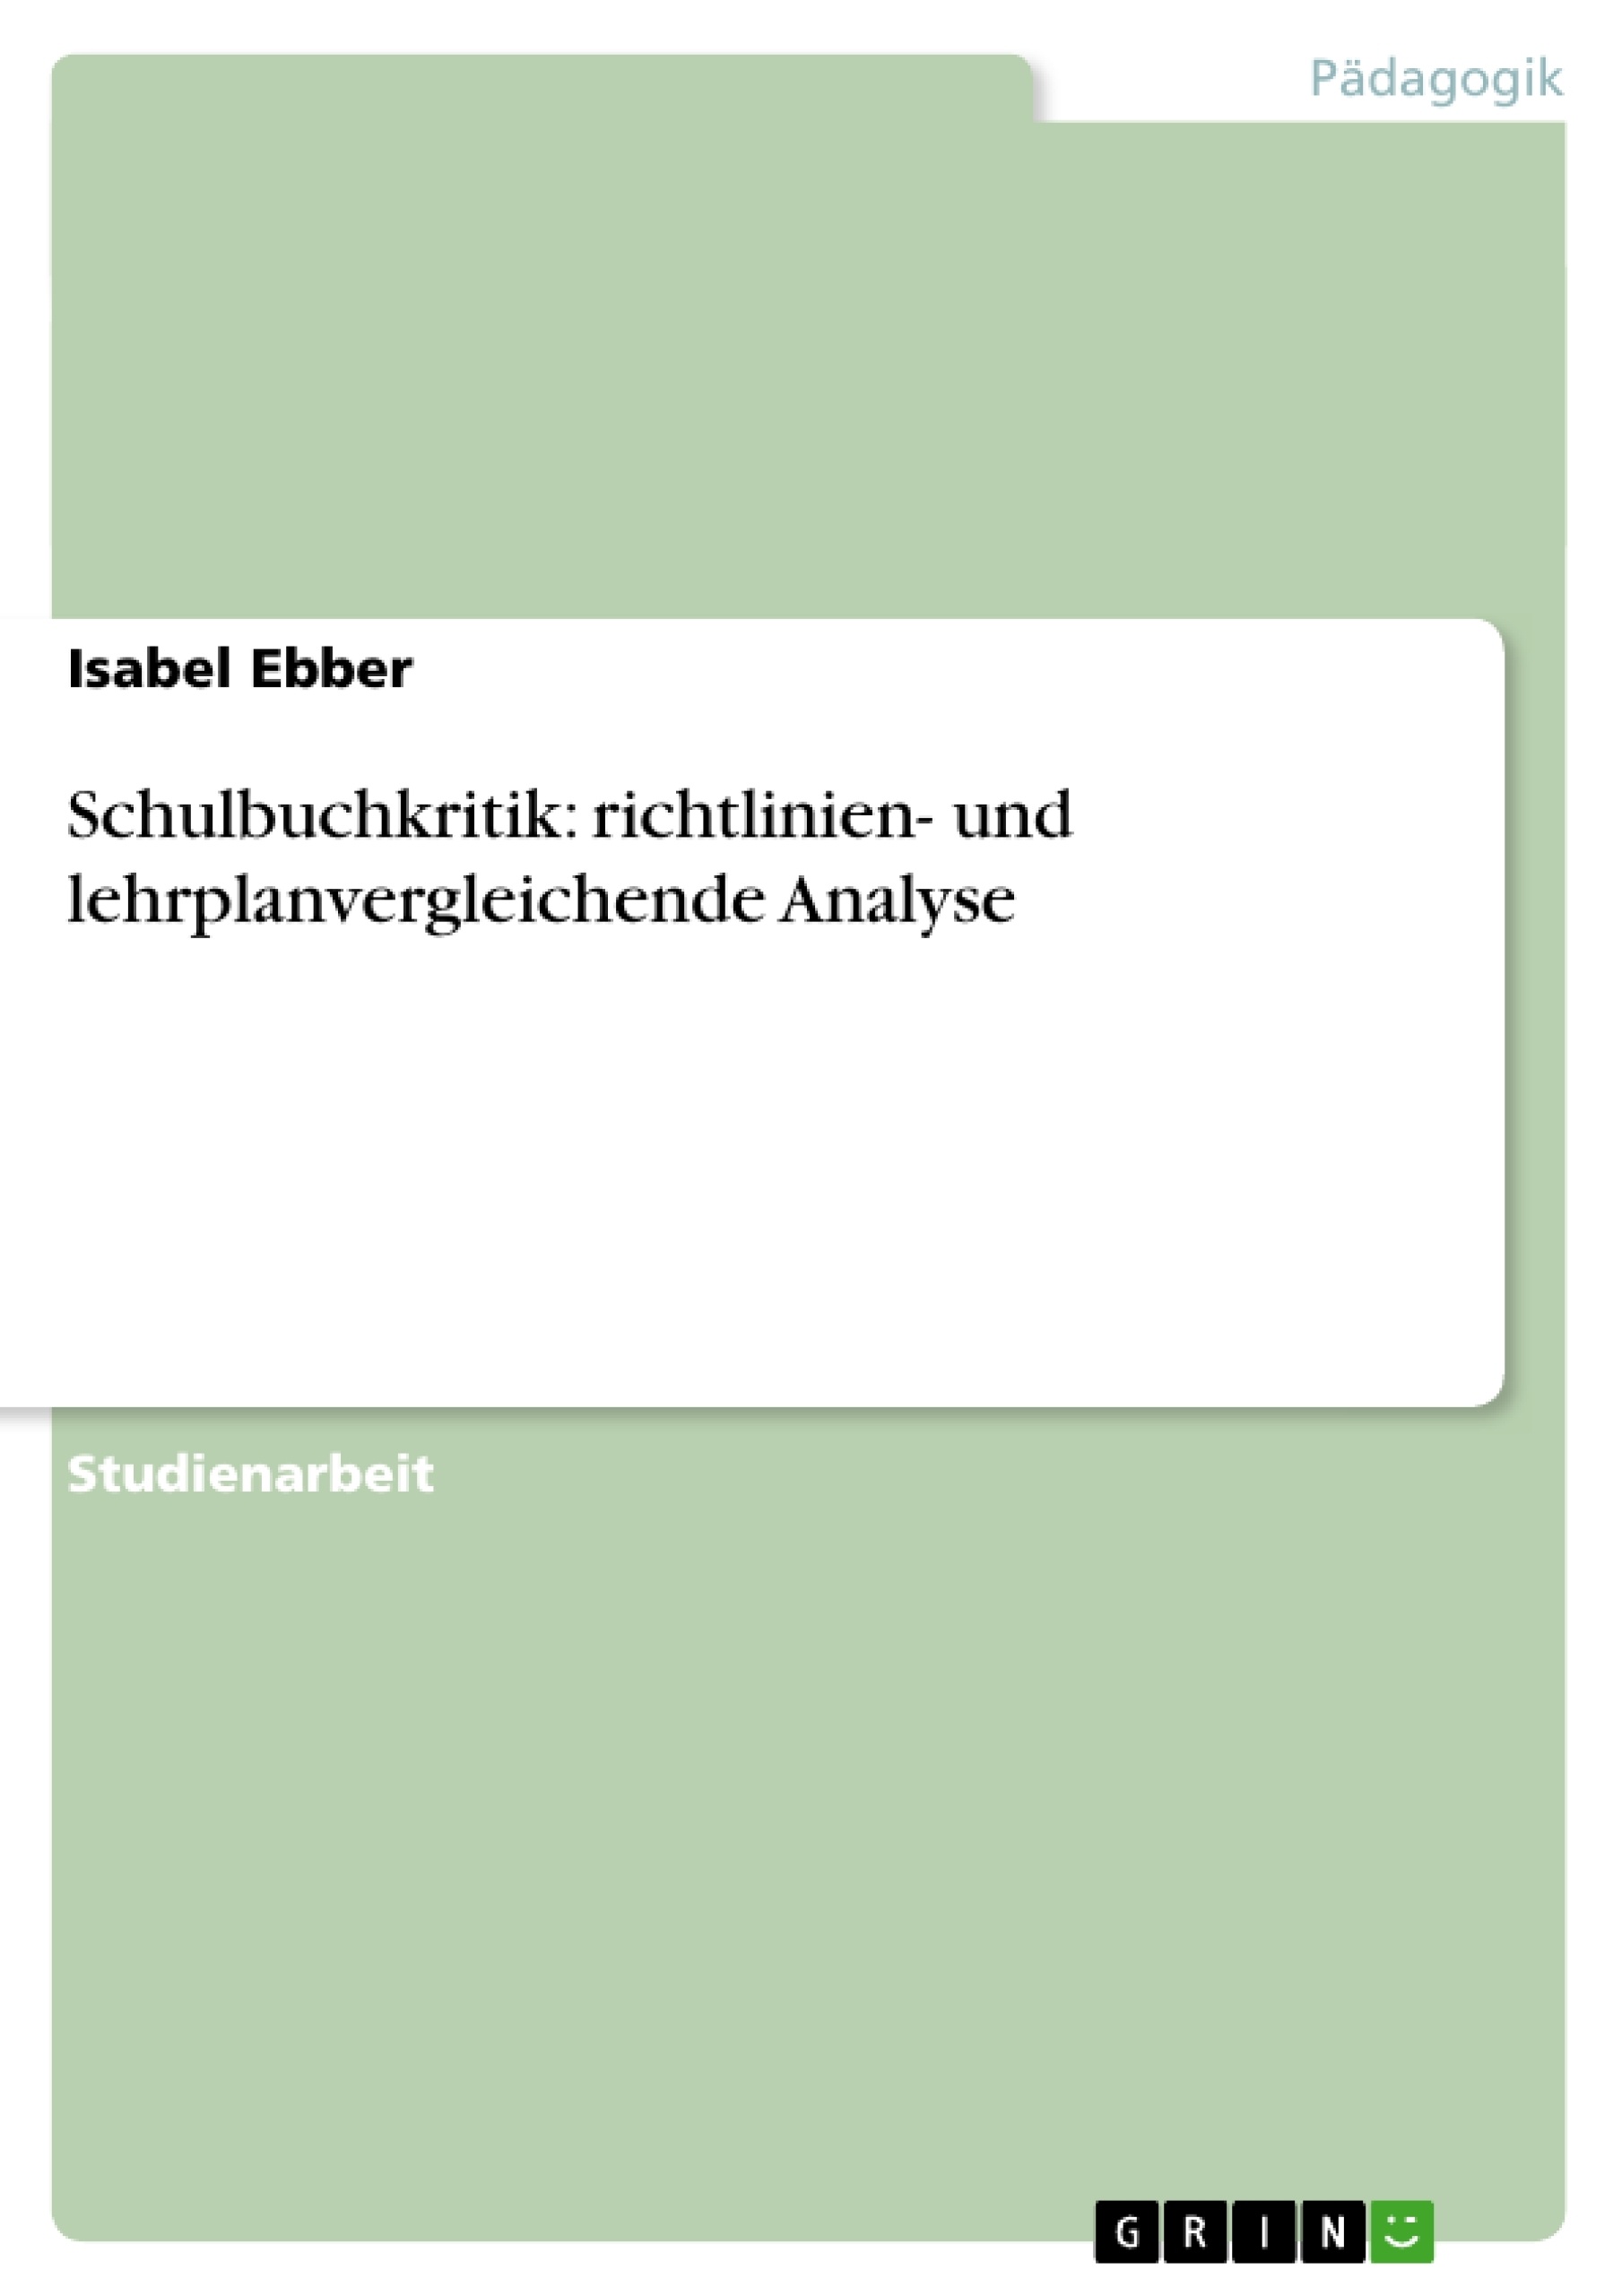 Title: Schulbuchkritik: richtlinien- und lehrplanvergleichende Analyse